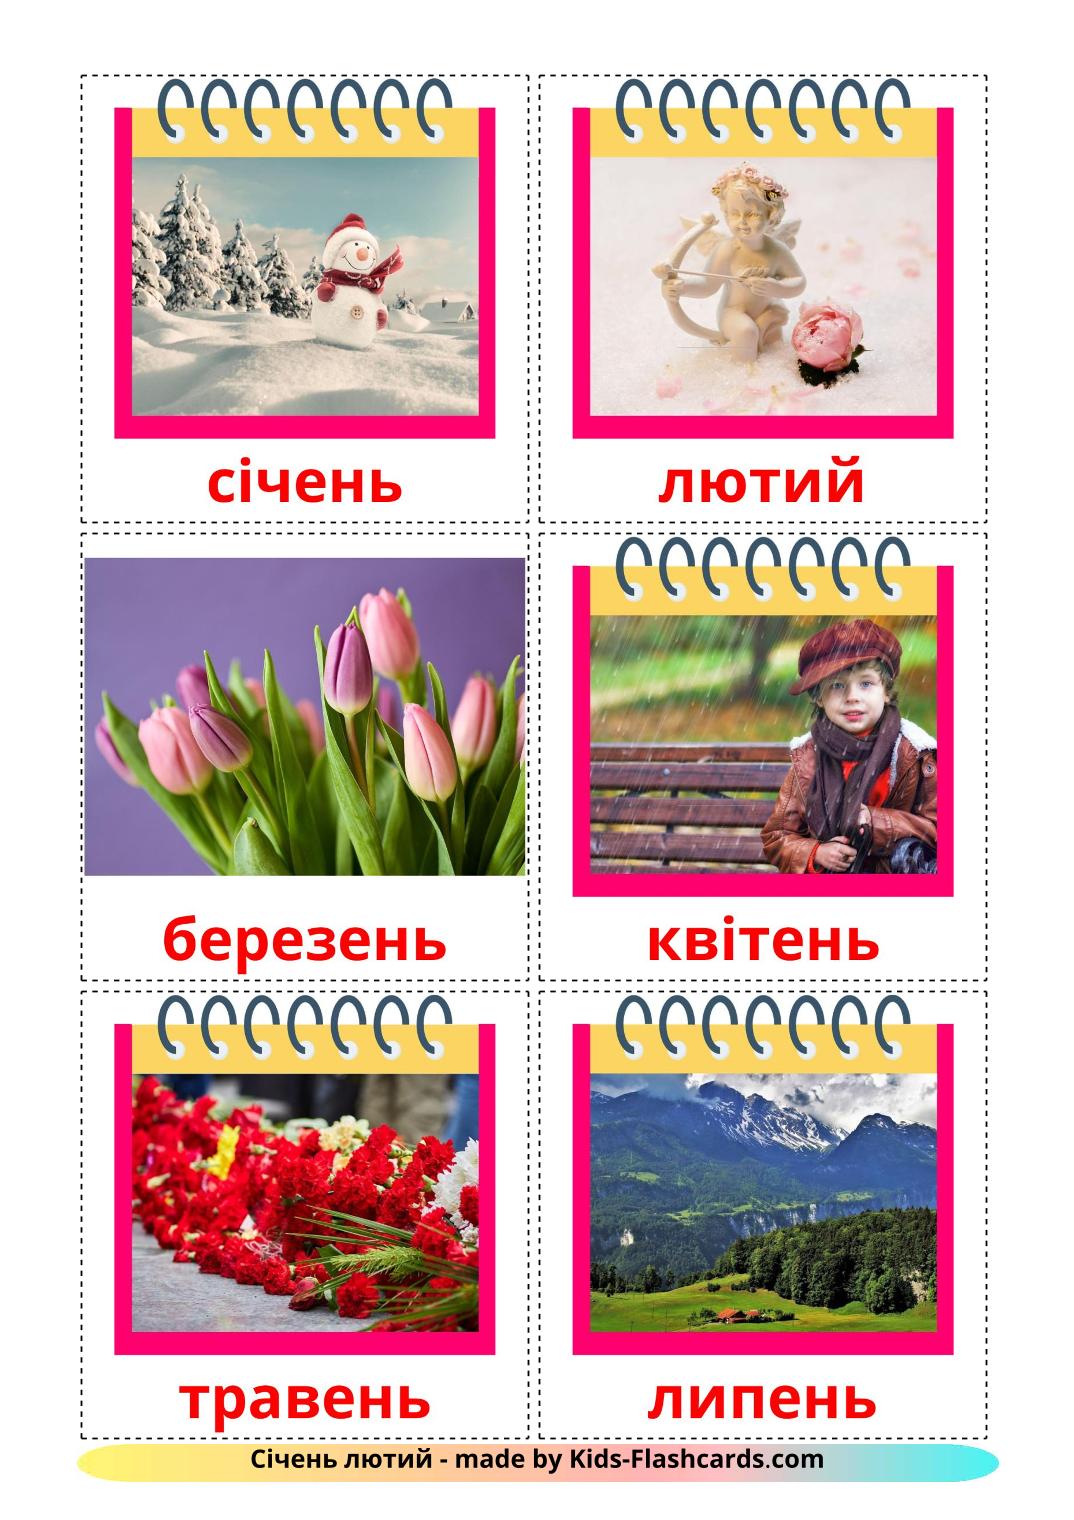 Les Mois de l'année - 12 Flashcards ukrainien imprimables gratuitement